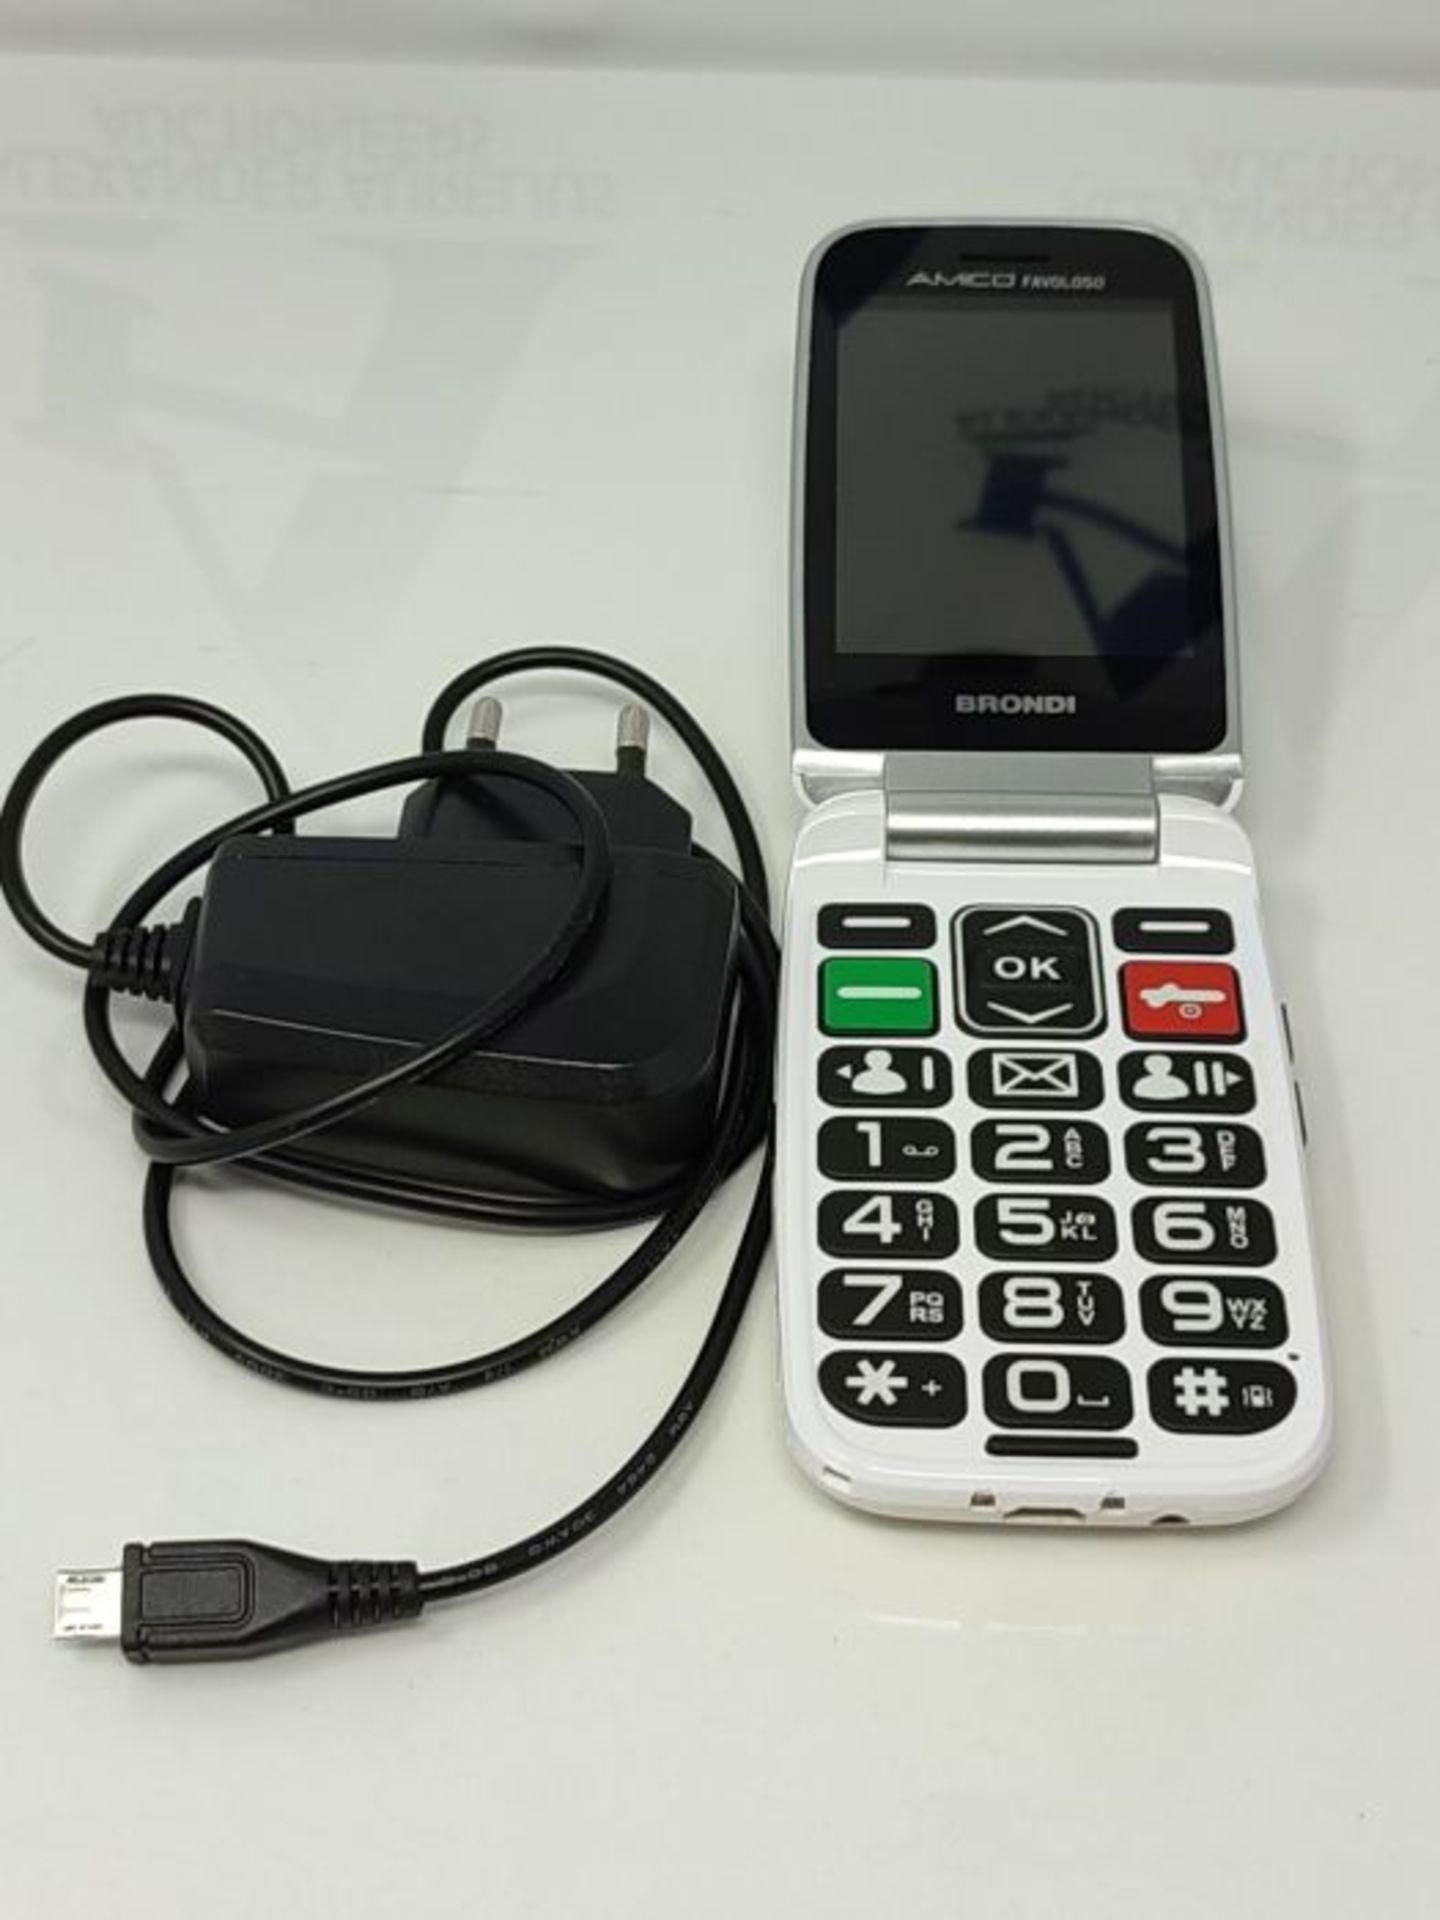 RRP £65.00 Brondi Amico Favoloso, Telefono cellulare GSM per anziani con tasti grandi, tasto SOS - Image 2 of 9